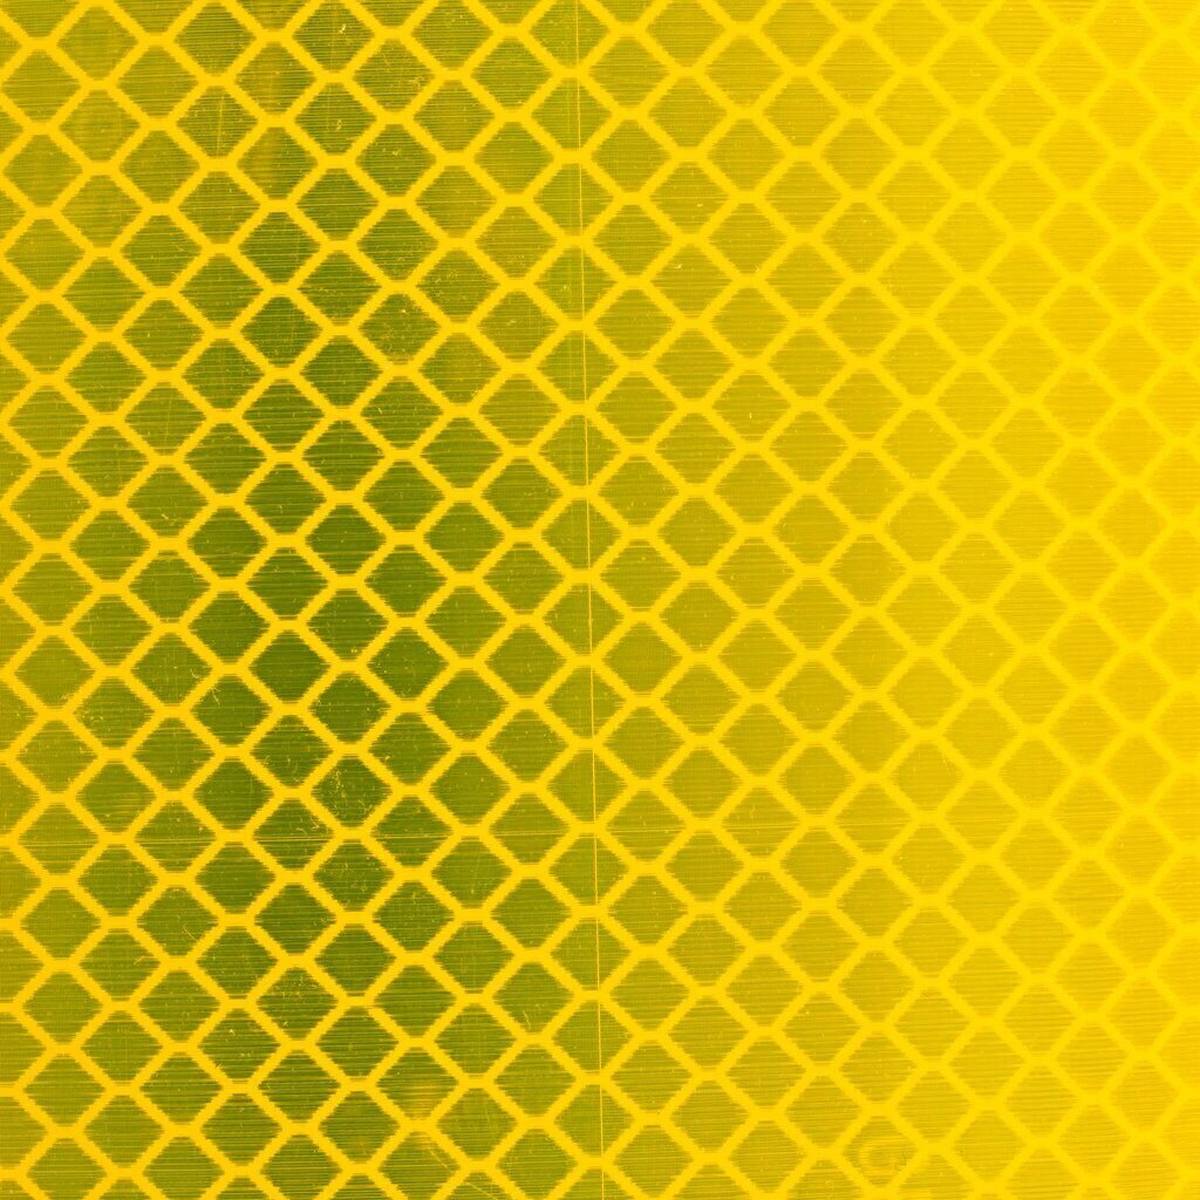 Pellicola riflettente 3M Diamond Grade DG³ 4081, giallo fluorescente (giallo brillante), 1220 mm x 45,7 m